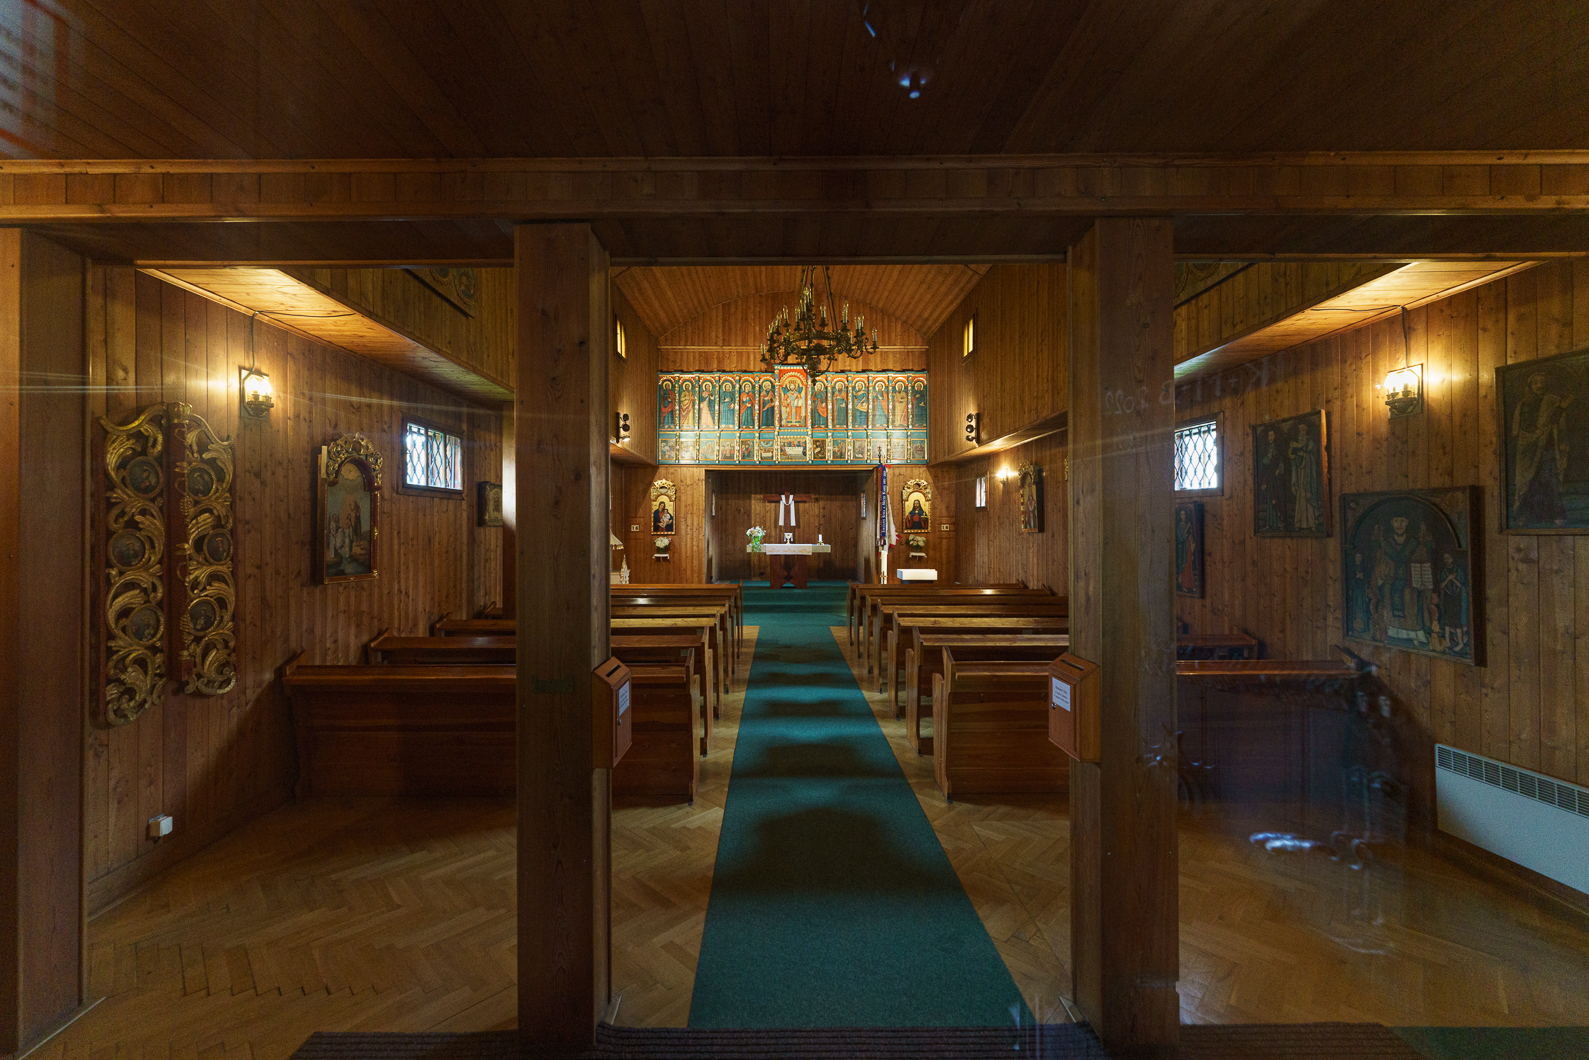 Dřevěný kostelík v Blansku